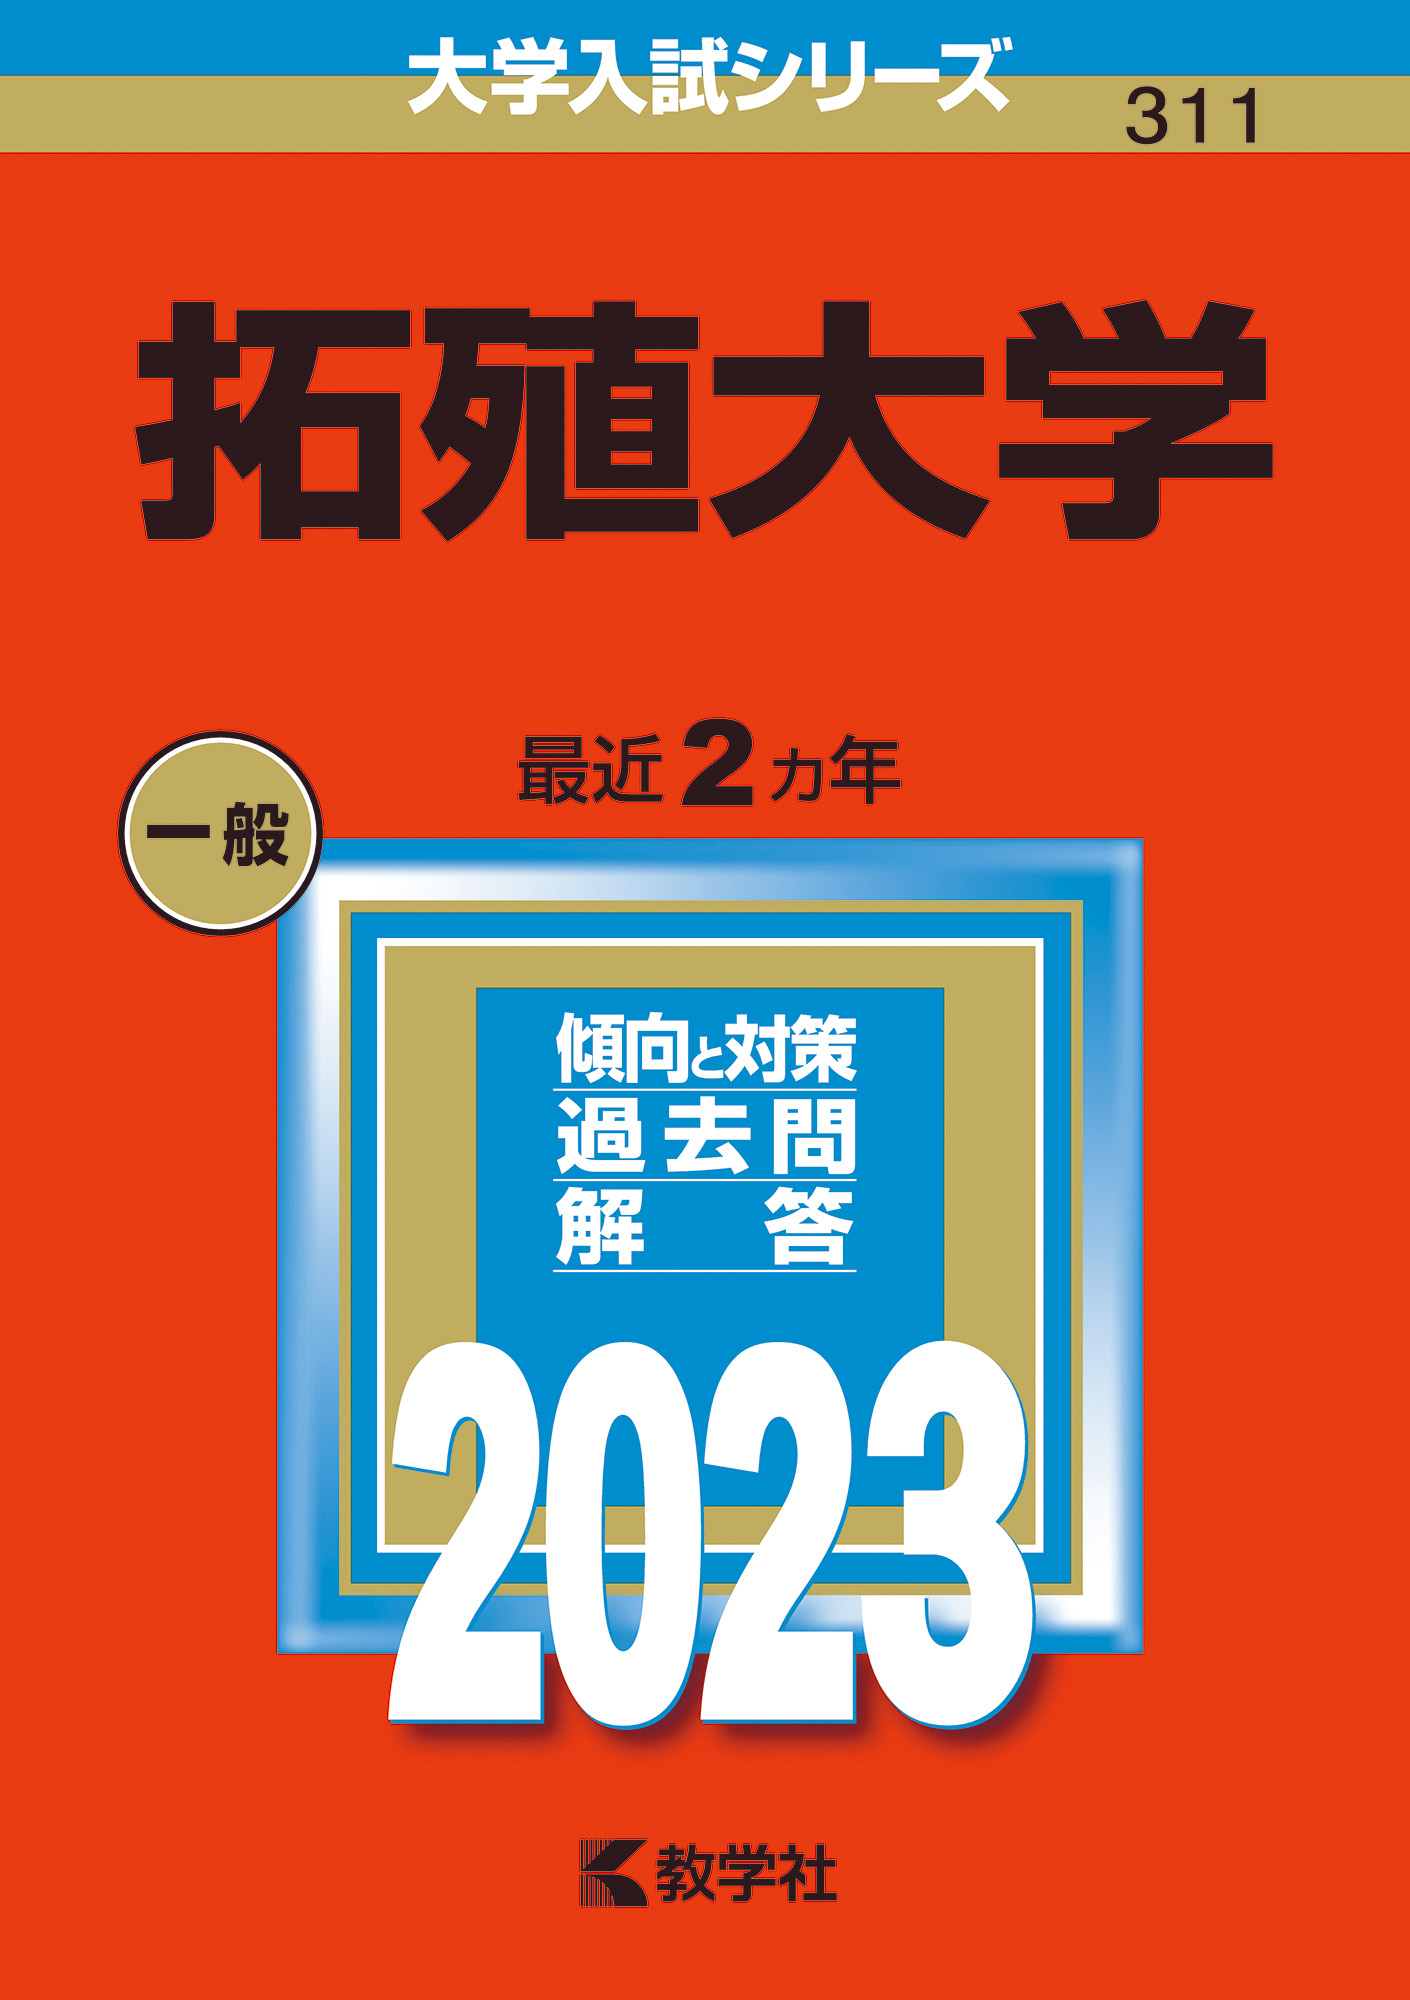 超新作】 拓殖大学 2023 赤本 fawe.org